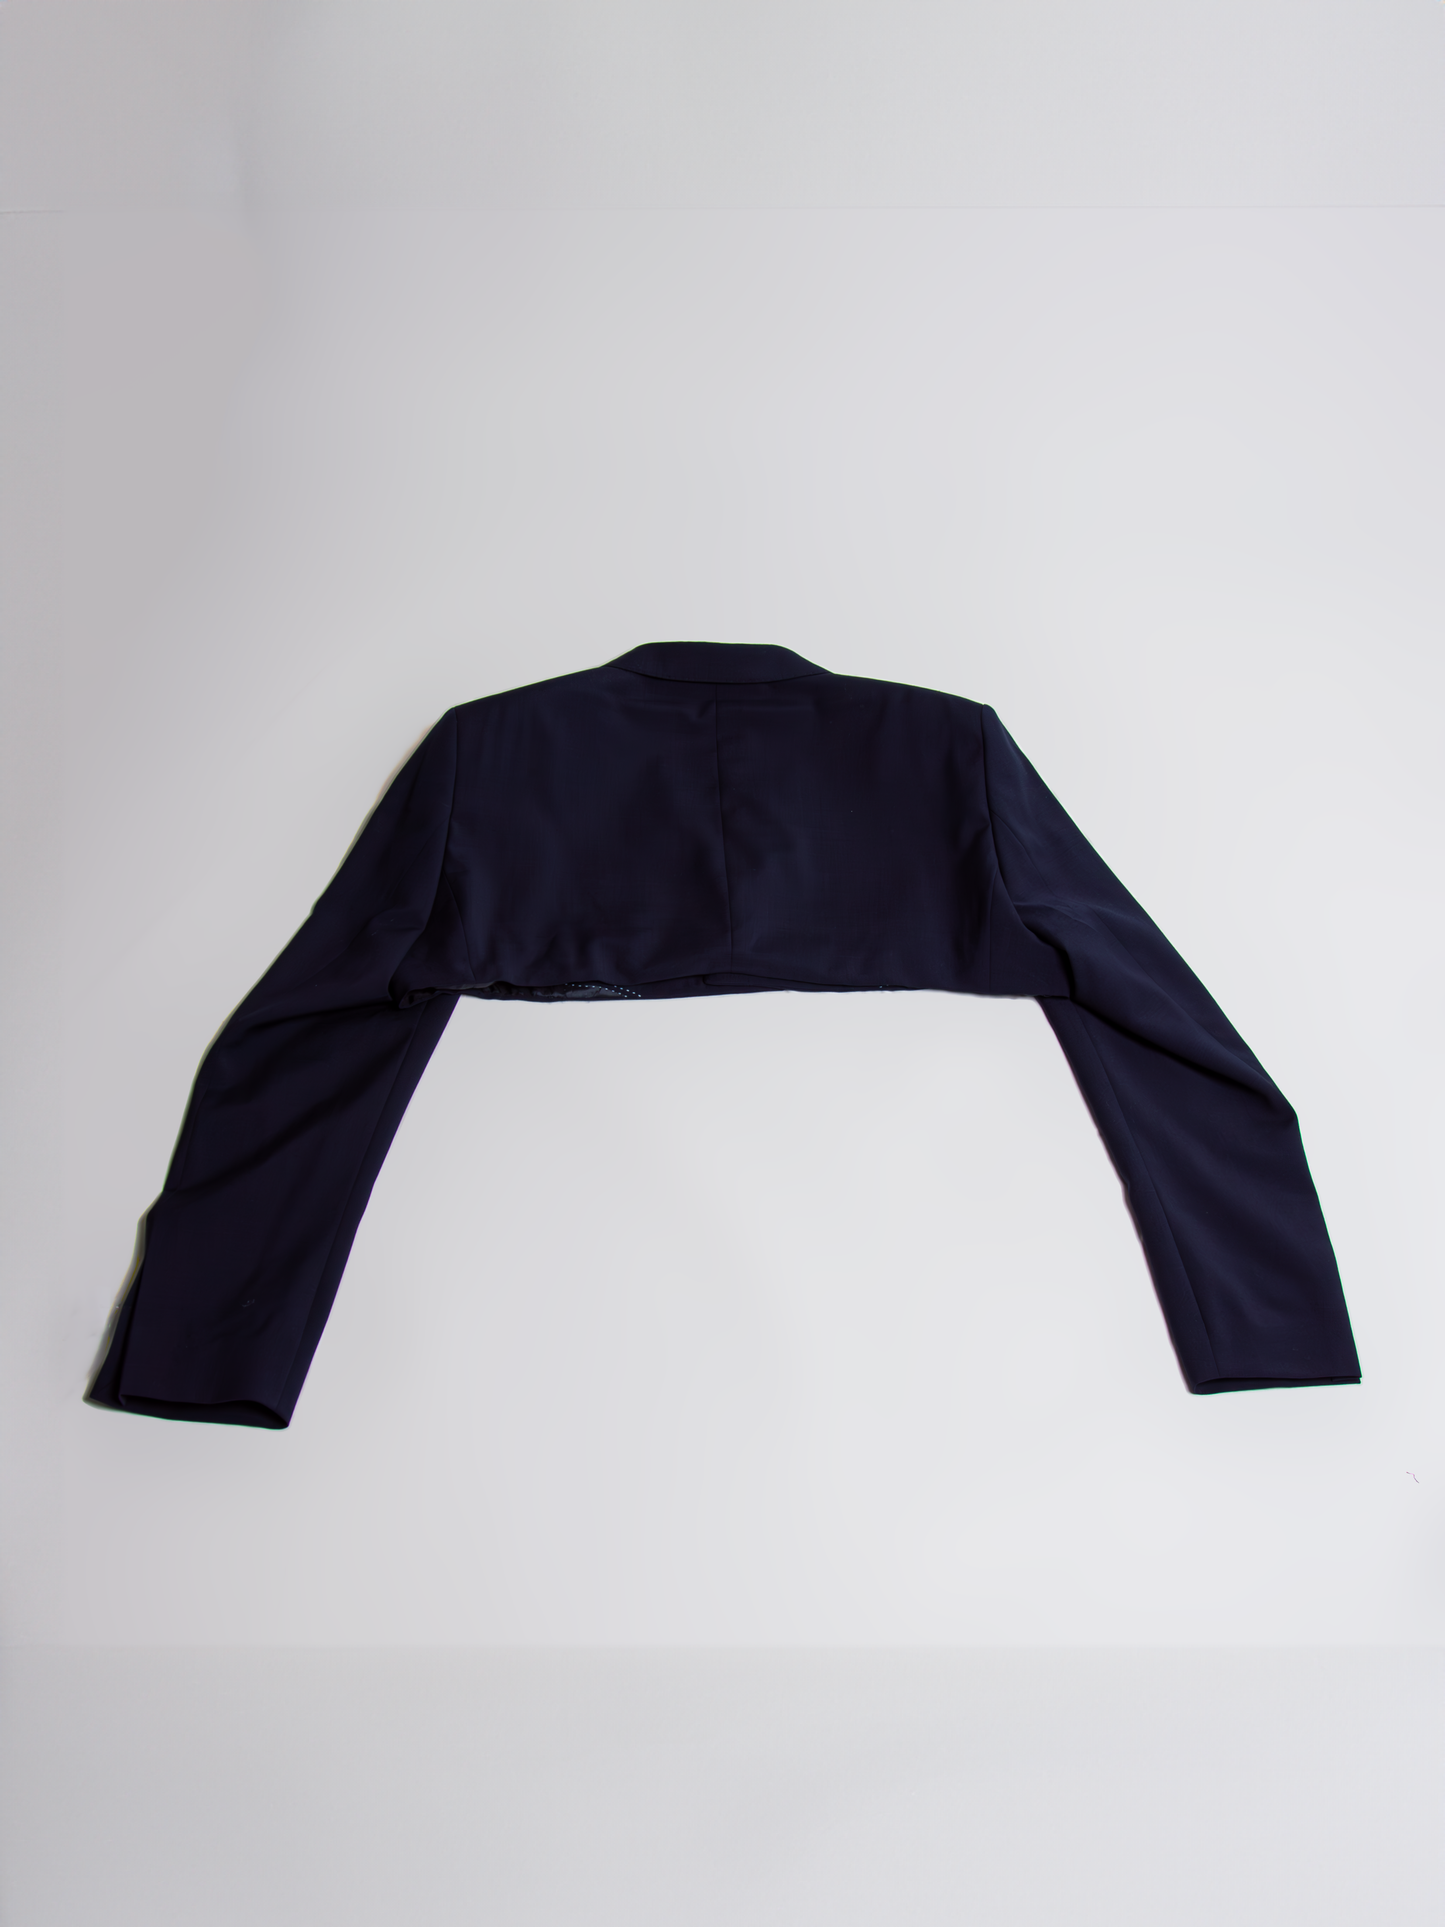 Cropped blazer with mini skirt